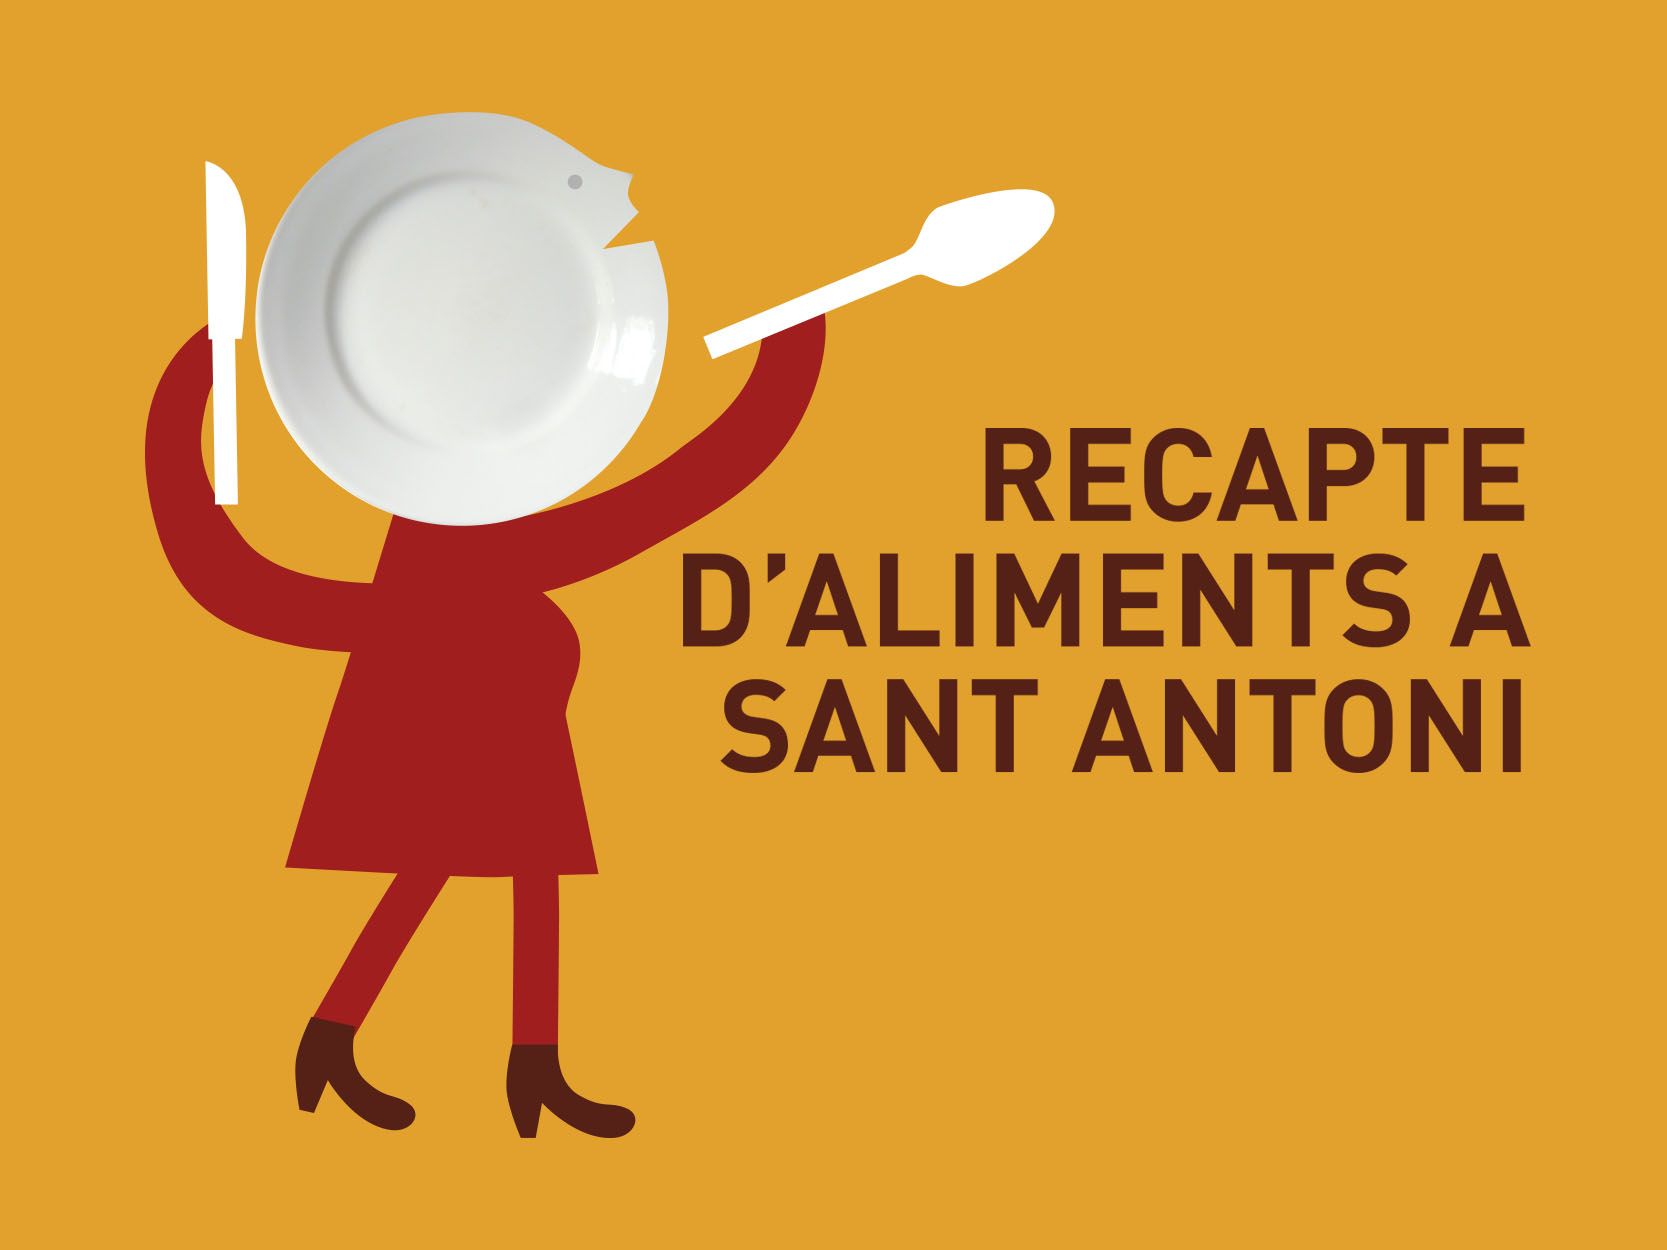 Participa en la recogida de alimentos de Sant Antoni